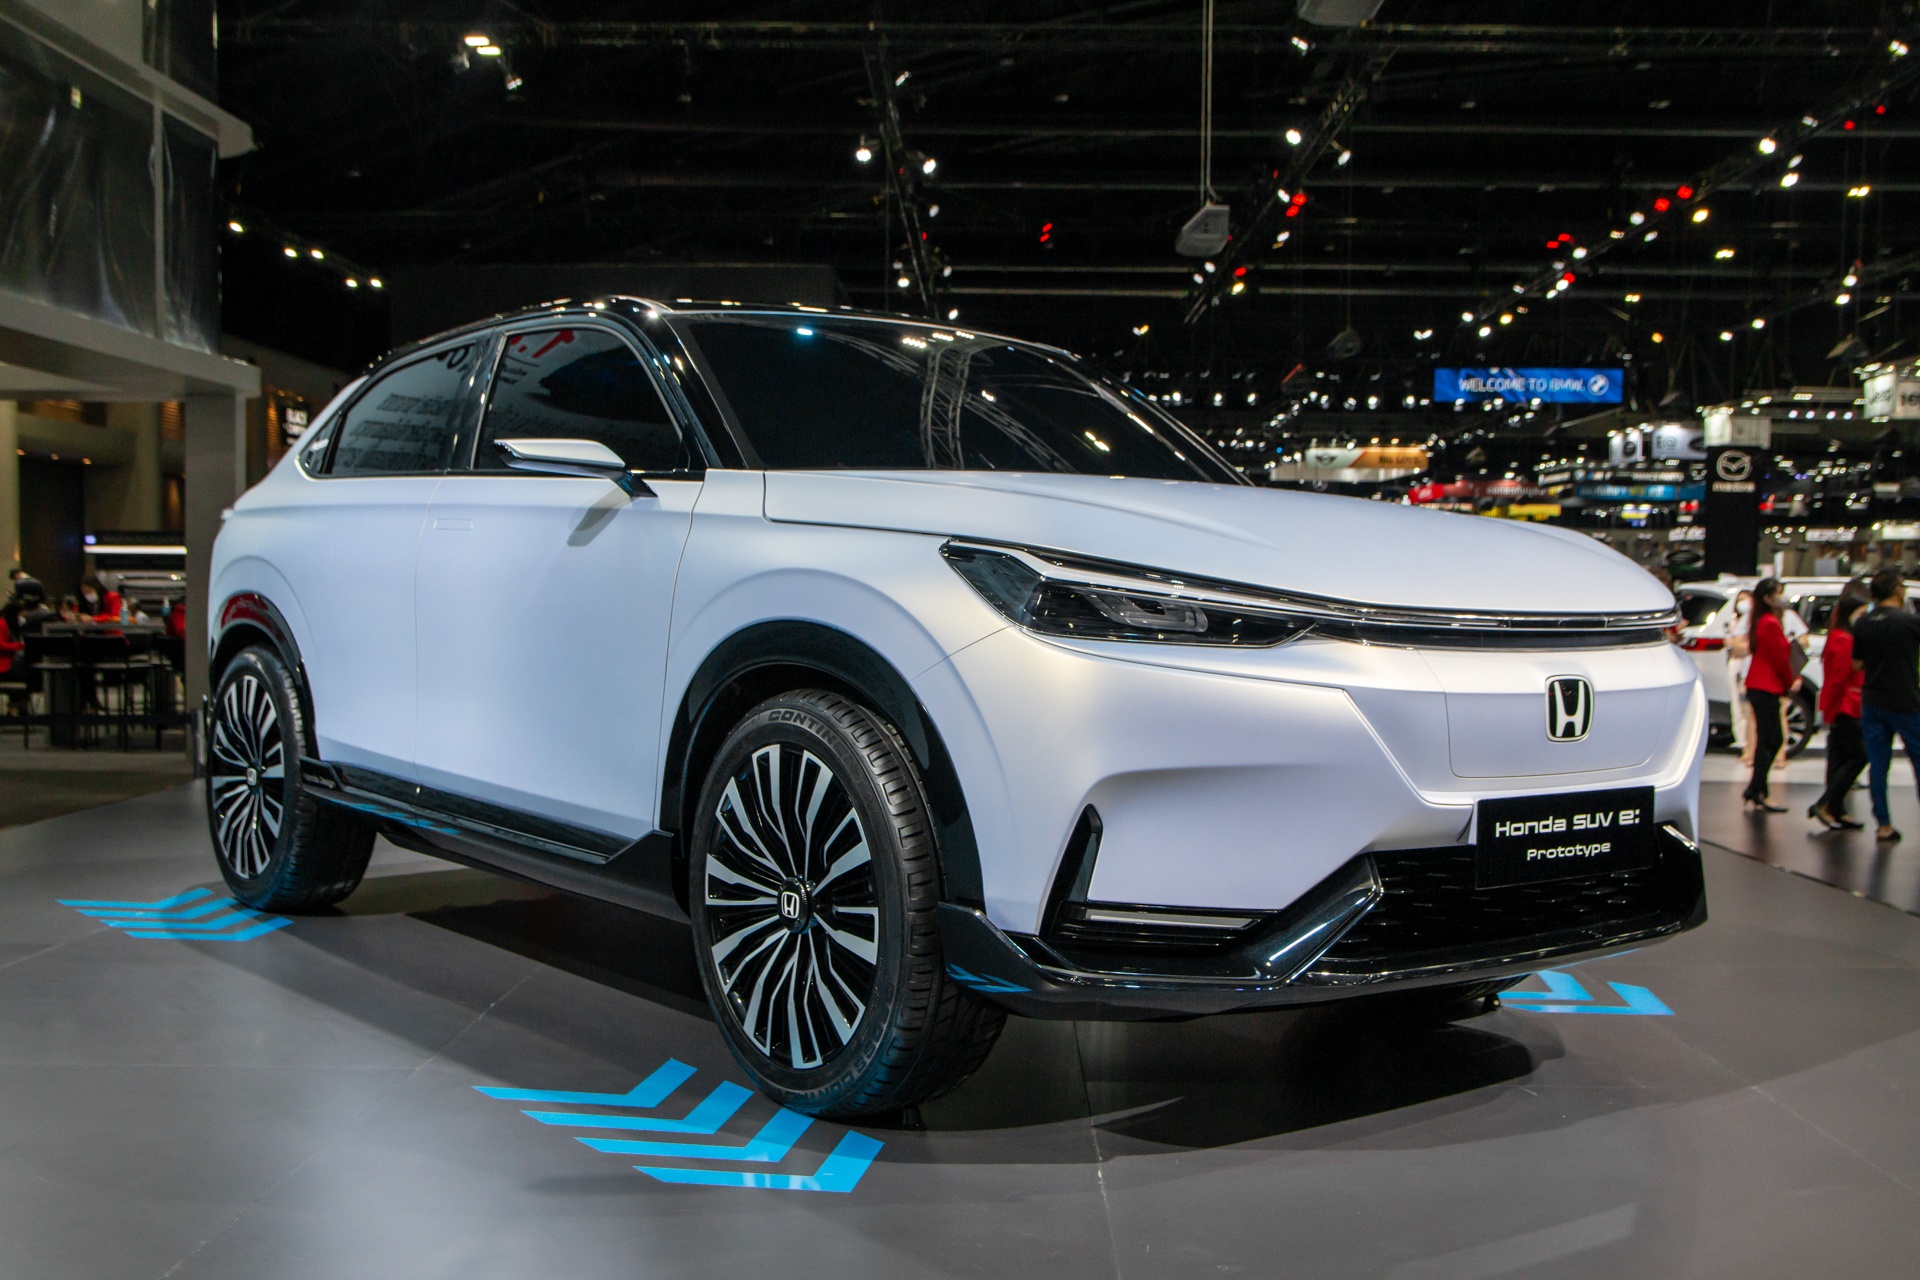 Honda SUV e:Prototype lần đầu được ra mắt tại Đông Nam Á - ảnh 3